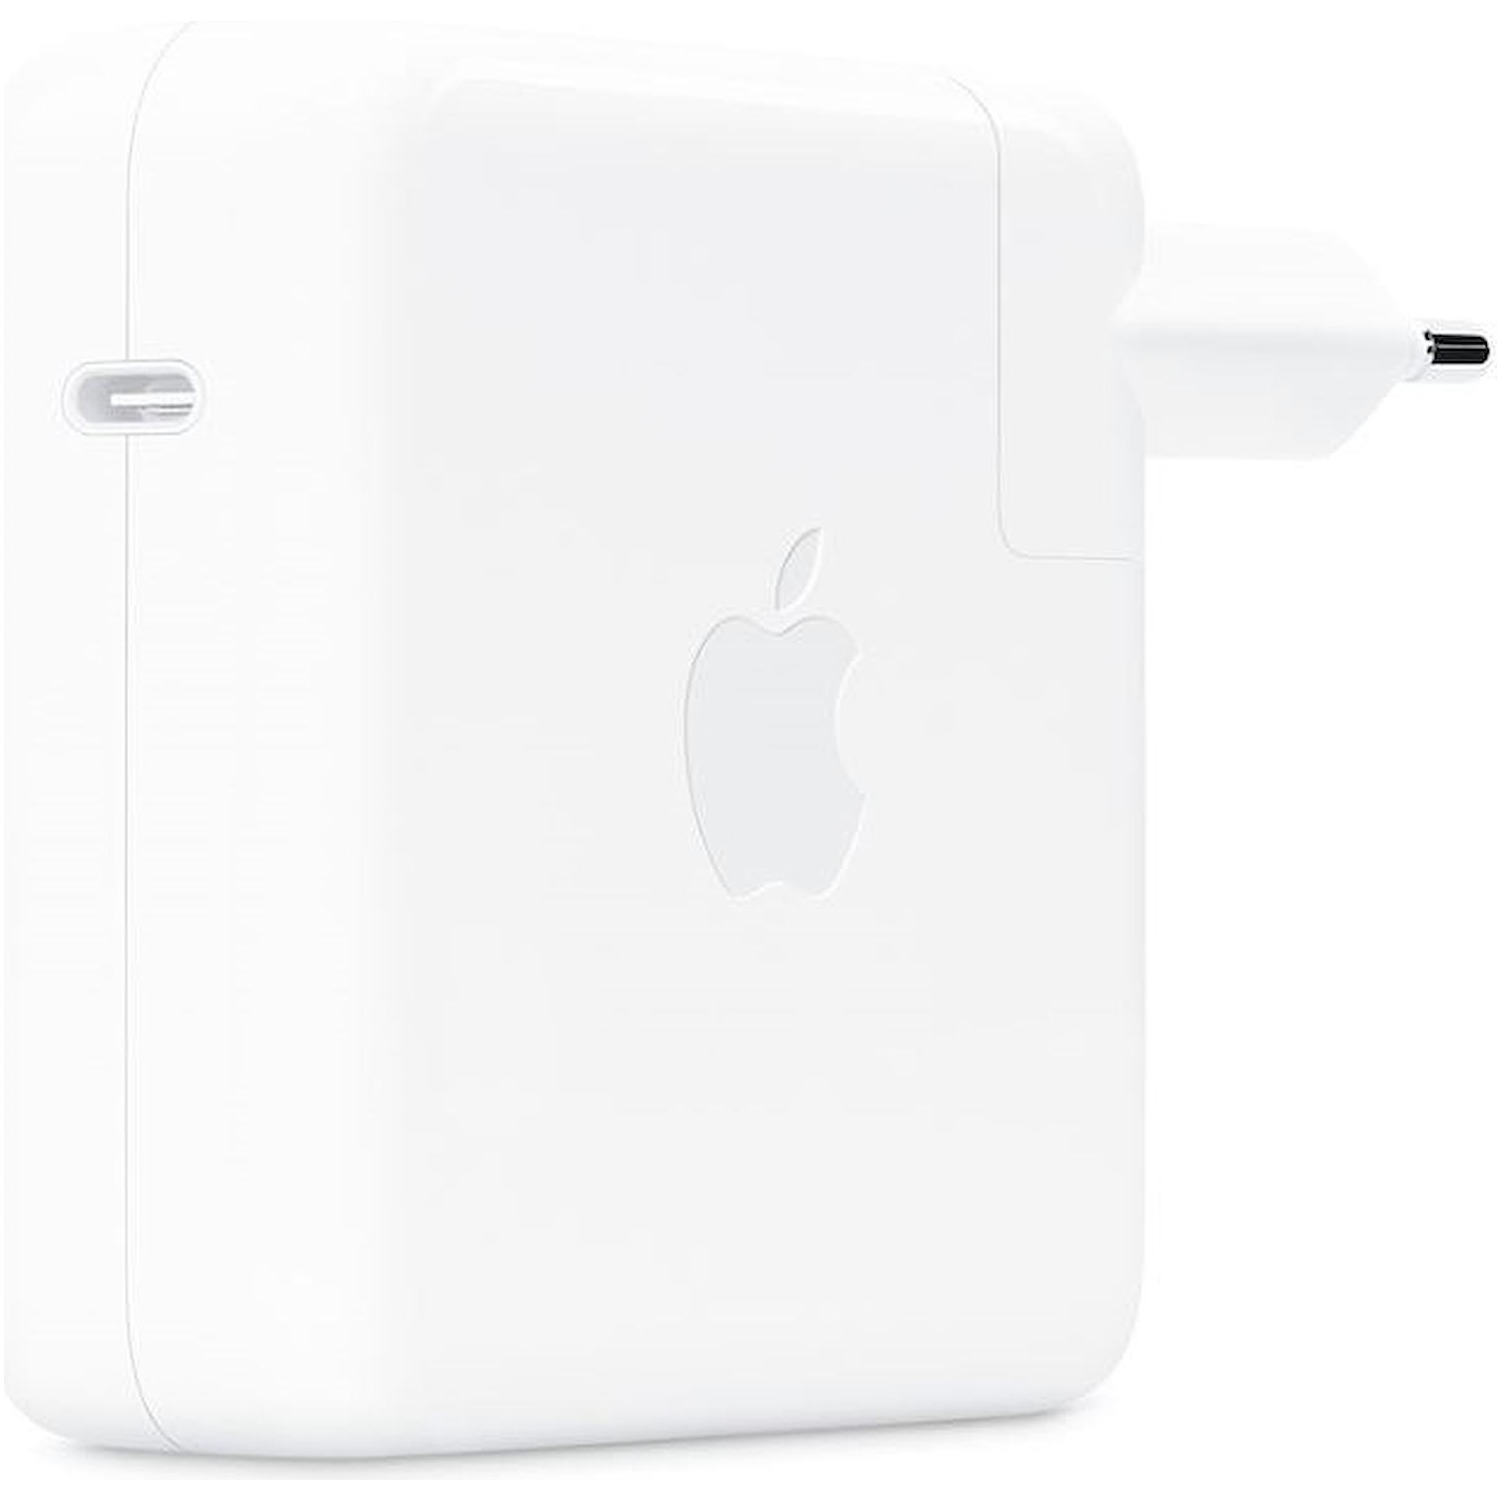 Immagine per Adattatore Apple 96W USB-C power bianco da DIMOStore